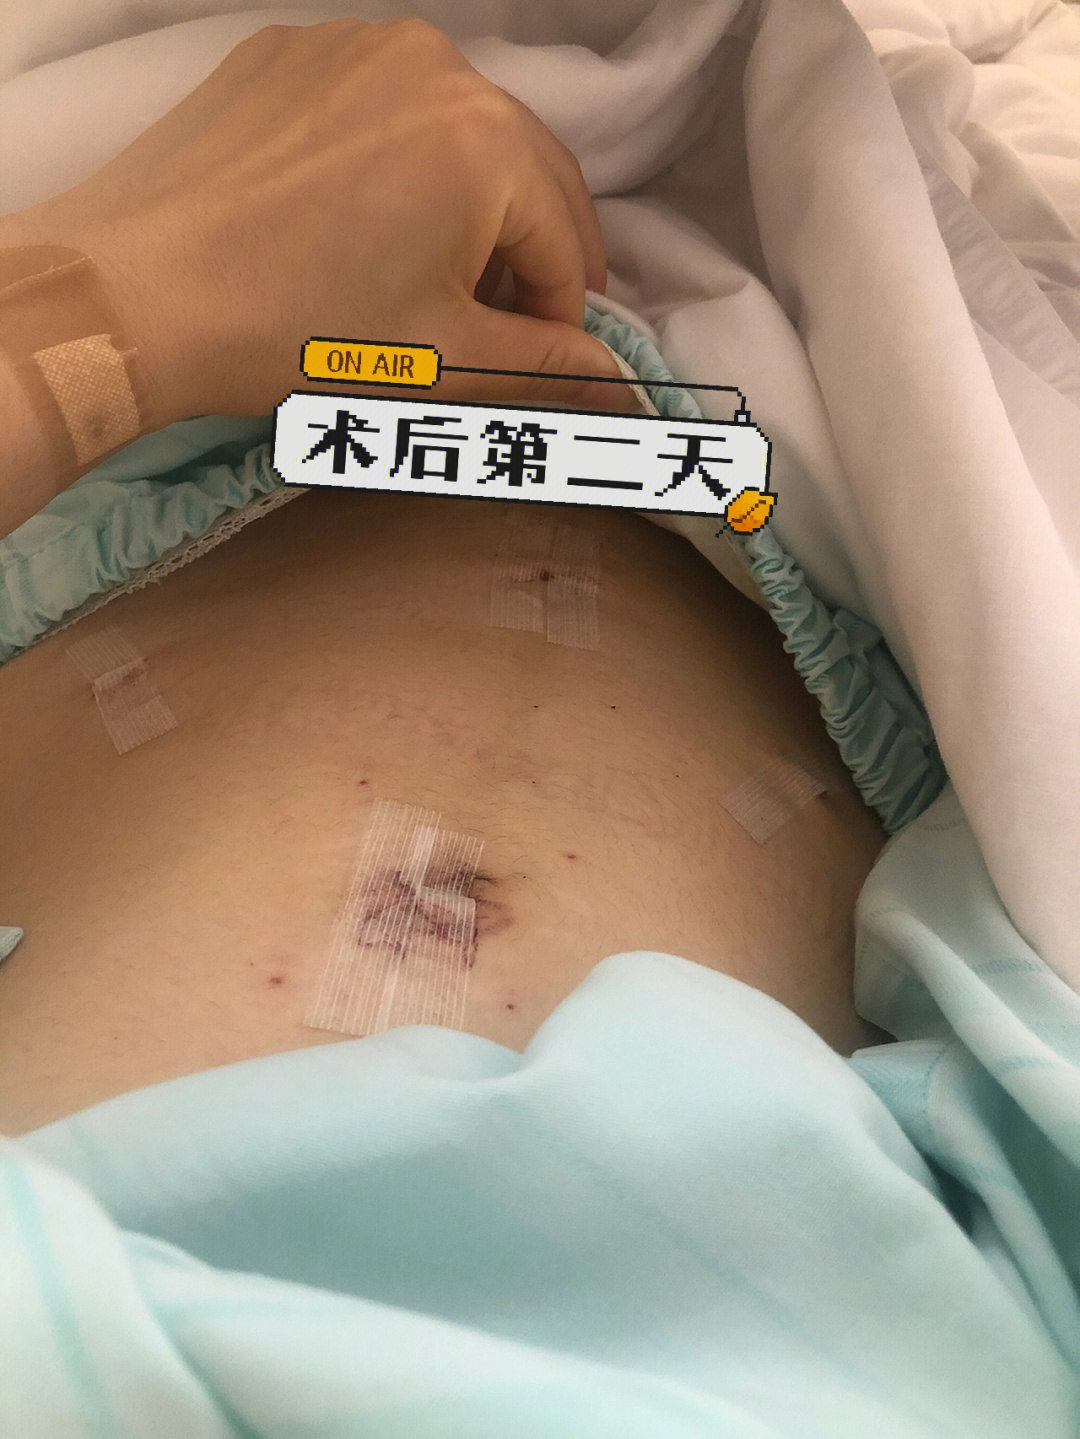 腹腔镜伤口恢复图 1月图片